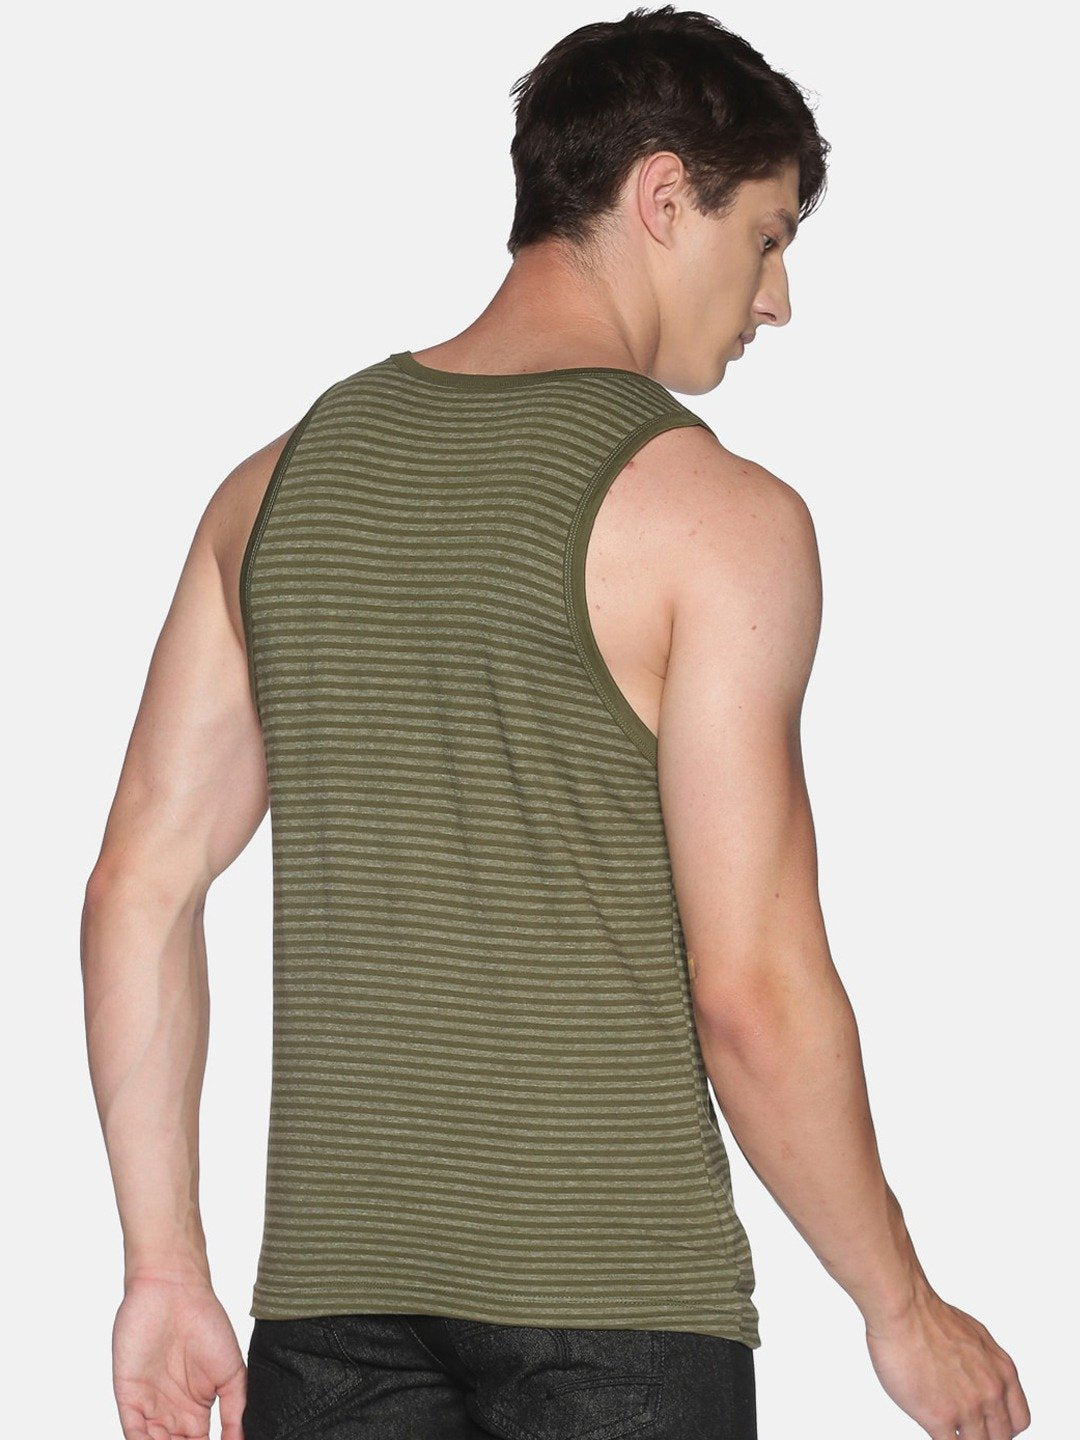 Sleeveless Green Sando Vest Tank Top for Men - Stilento